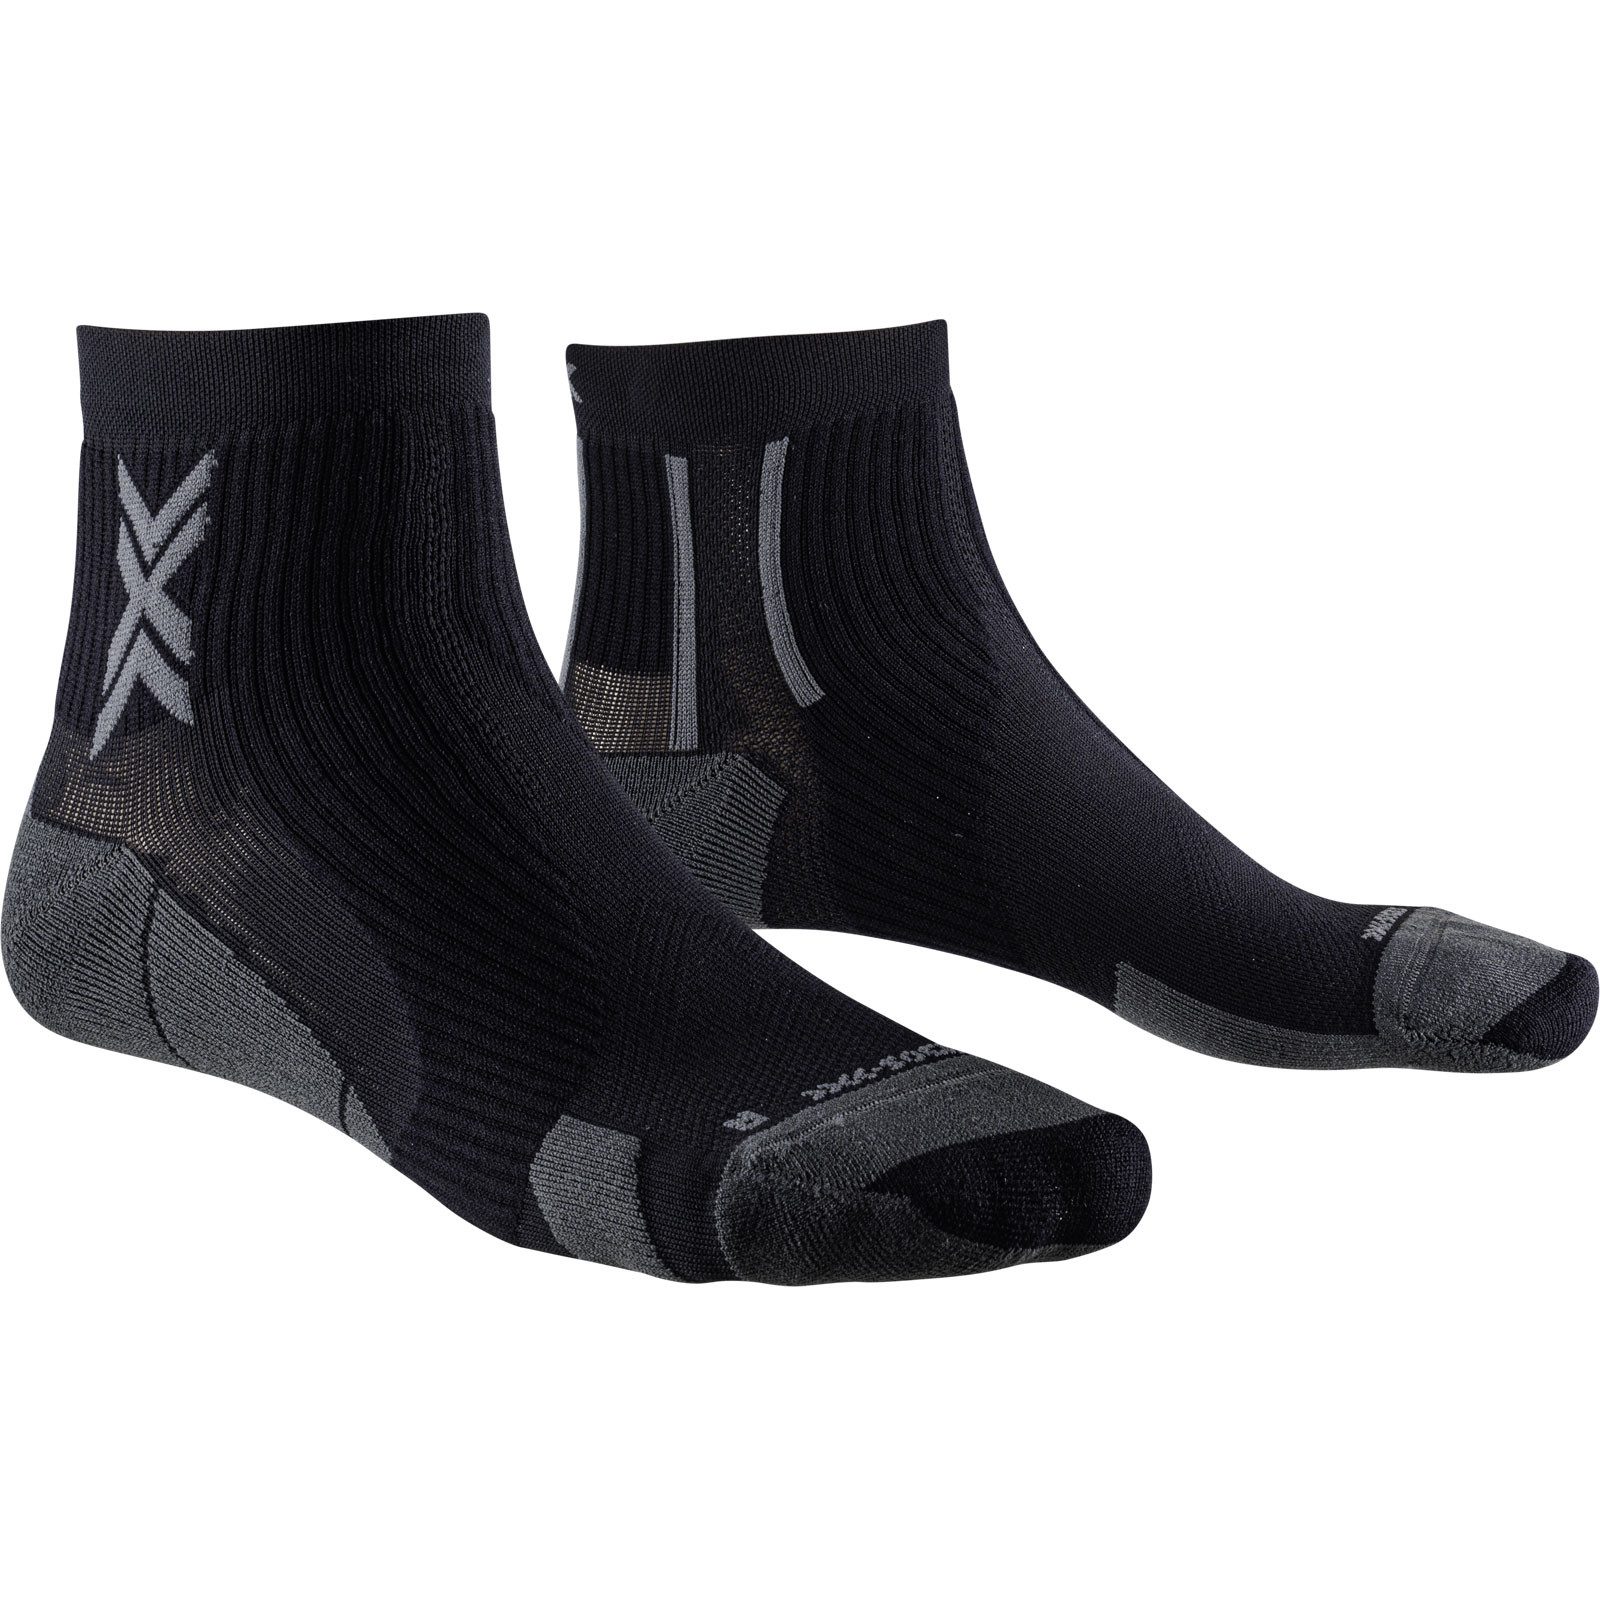 X-Socks Laufsocken Run Perform Ankle black Optimale Druckverteilung und perfekter Kontakt